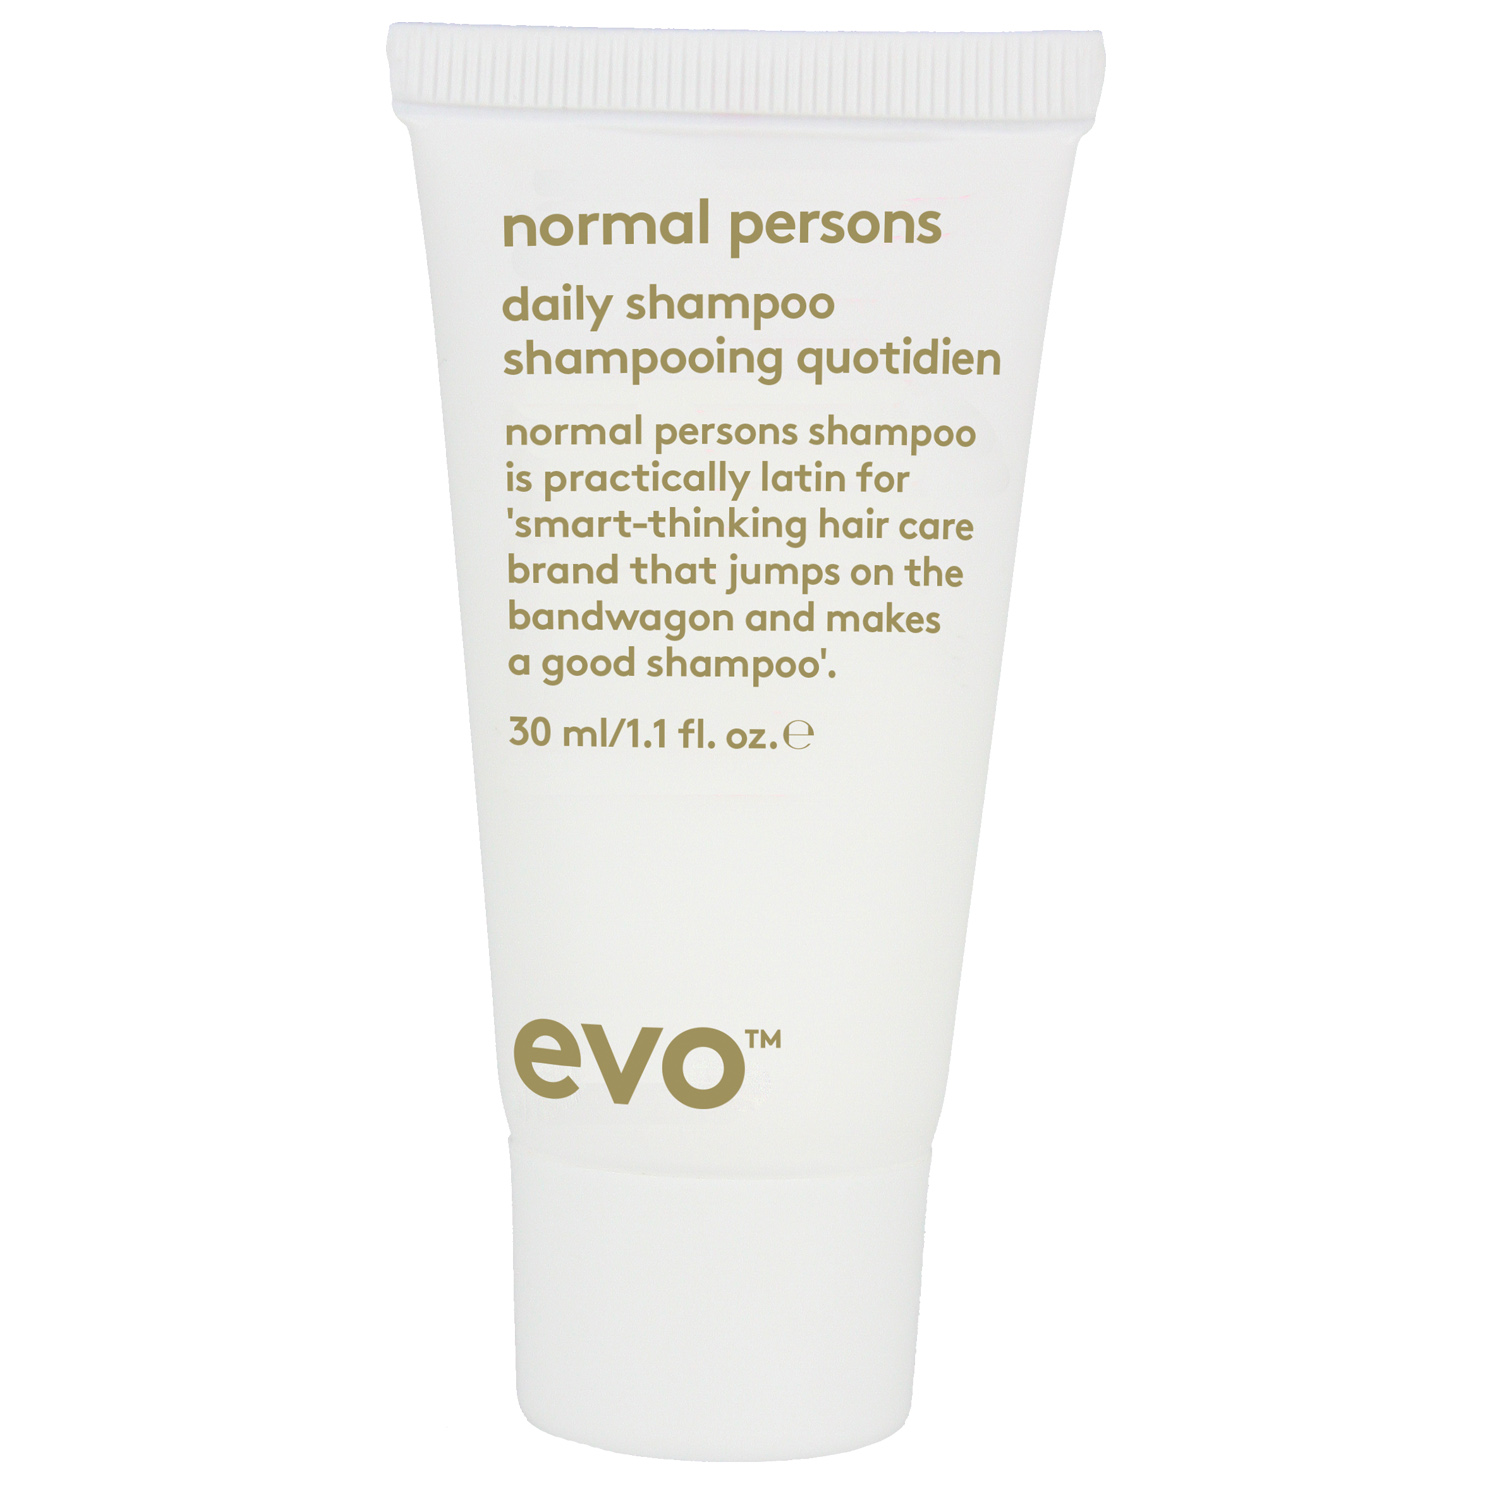 EVO Шампунь [простые люди] для восстановления баланса кожи головы, 30 мл (EVO, travel) цена и фото